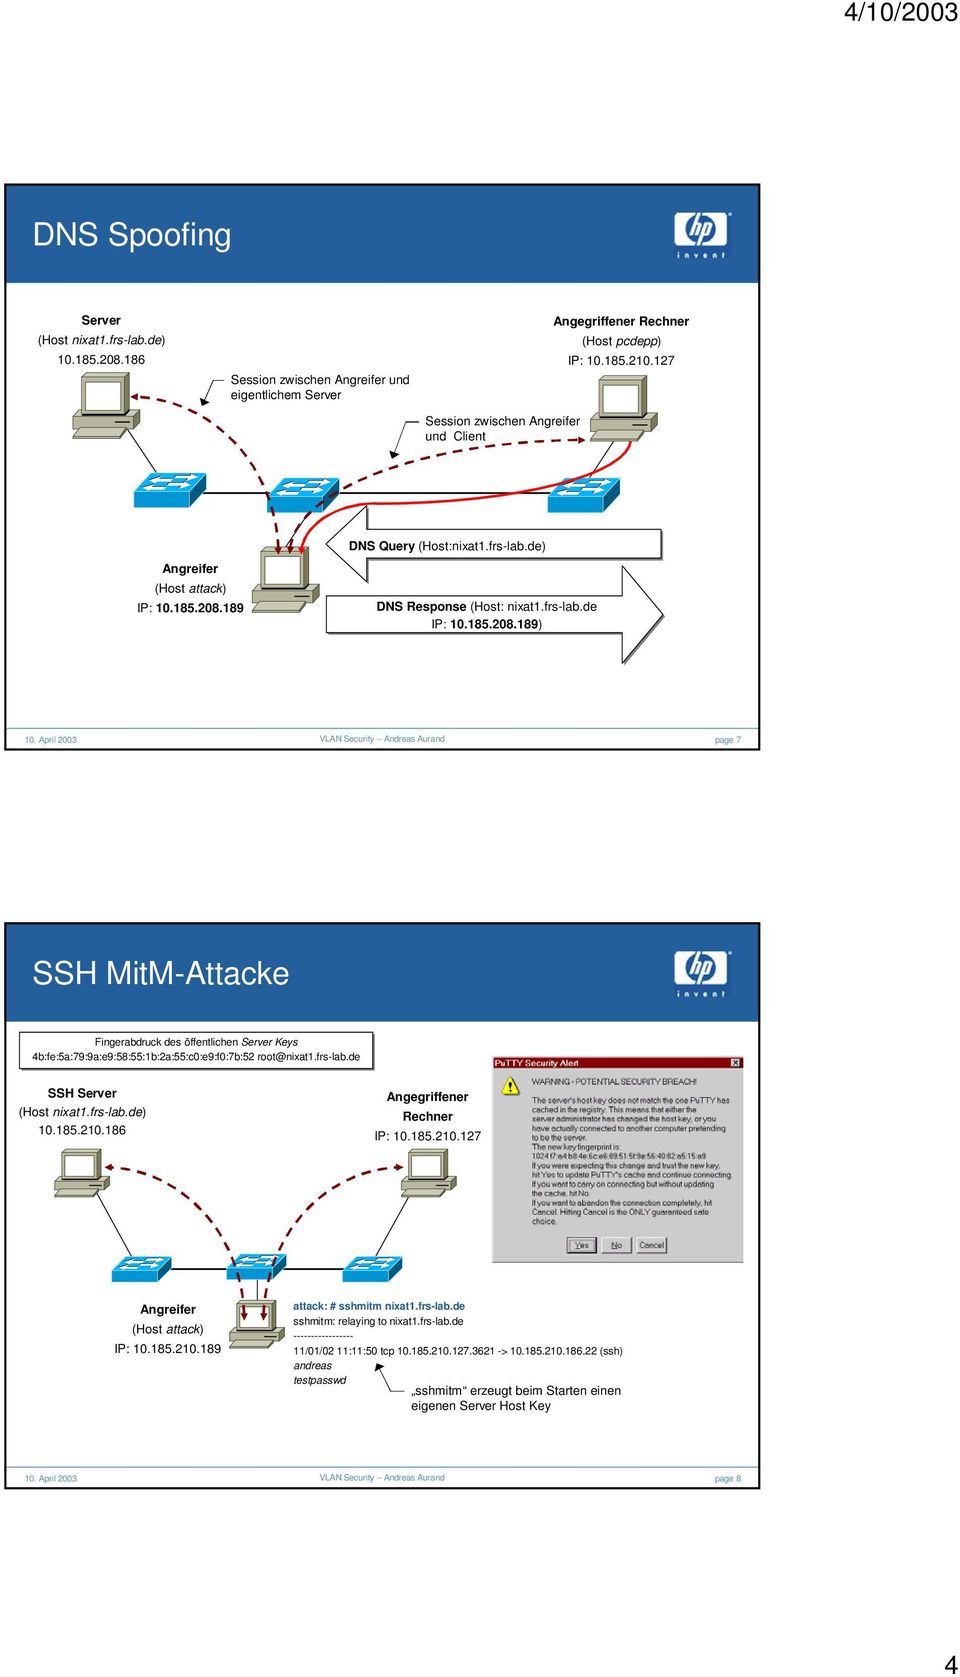 frs-lab.de SSH Server (Host nixat1.frs-lab.de) 10.185.210.186 Angegriffener Rechner IP: 10.185.210.127 Angreifer (Host attack) IP: 10.185.210.189 attack: # sshmitm nixat1.frs-lab.de sshmitm: relaying to nixat1.